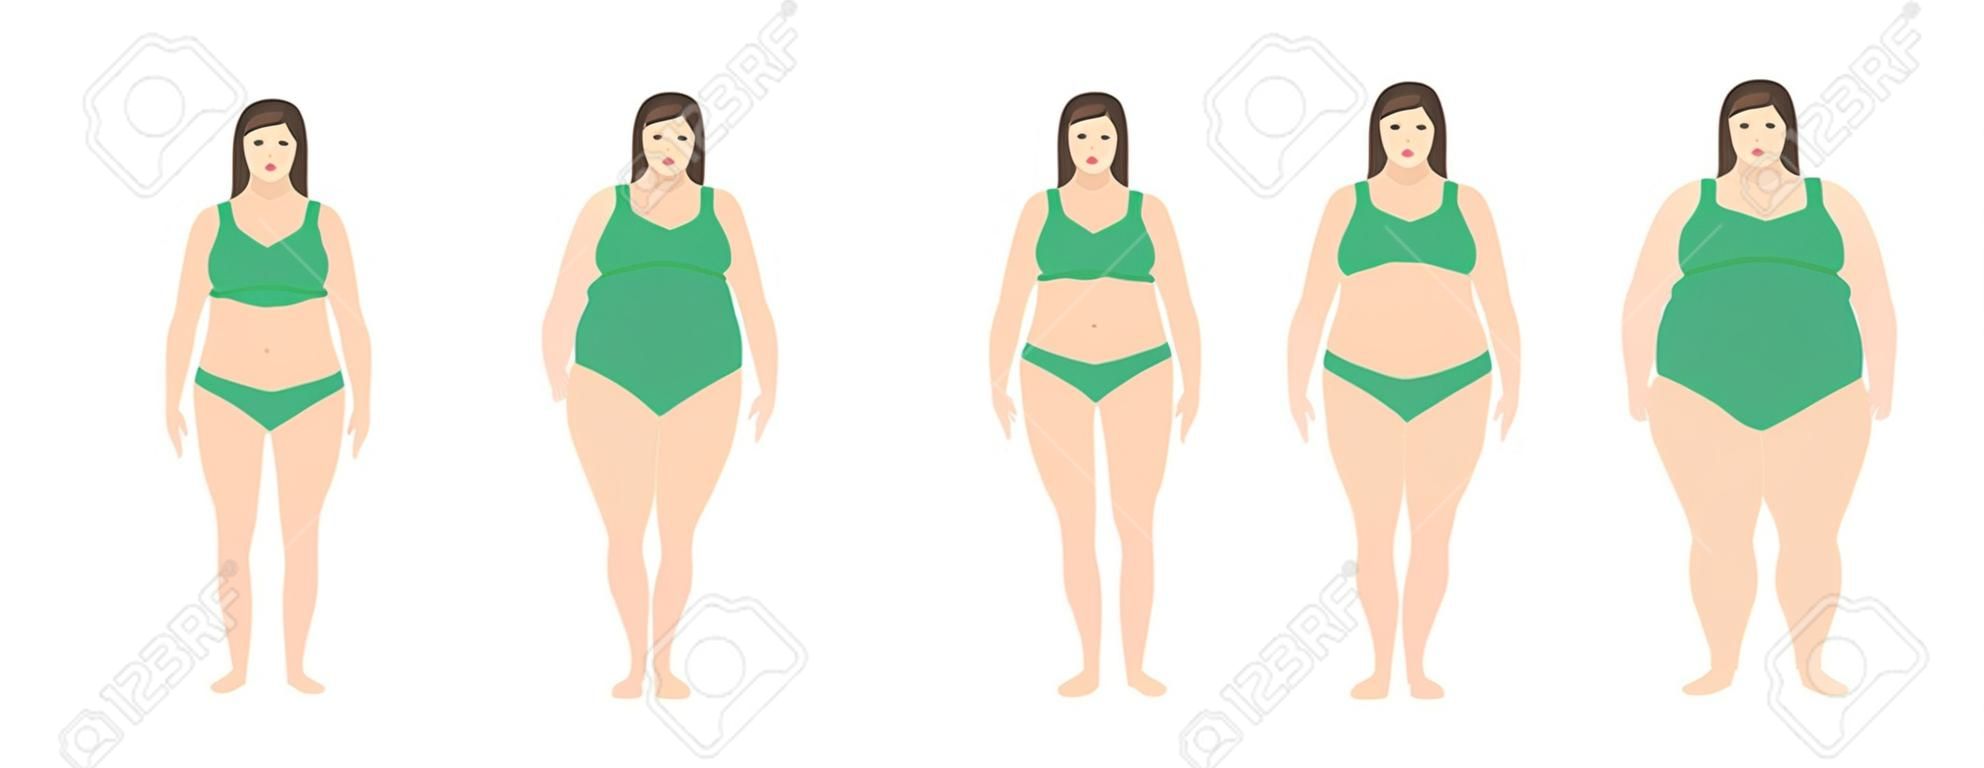 Ilustracja wektorowa kobiet o różnej wadze od anoreksji do skrajnej otyłości. Wskaźnik masy ciała, koncepcja utraty wagi.